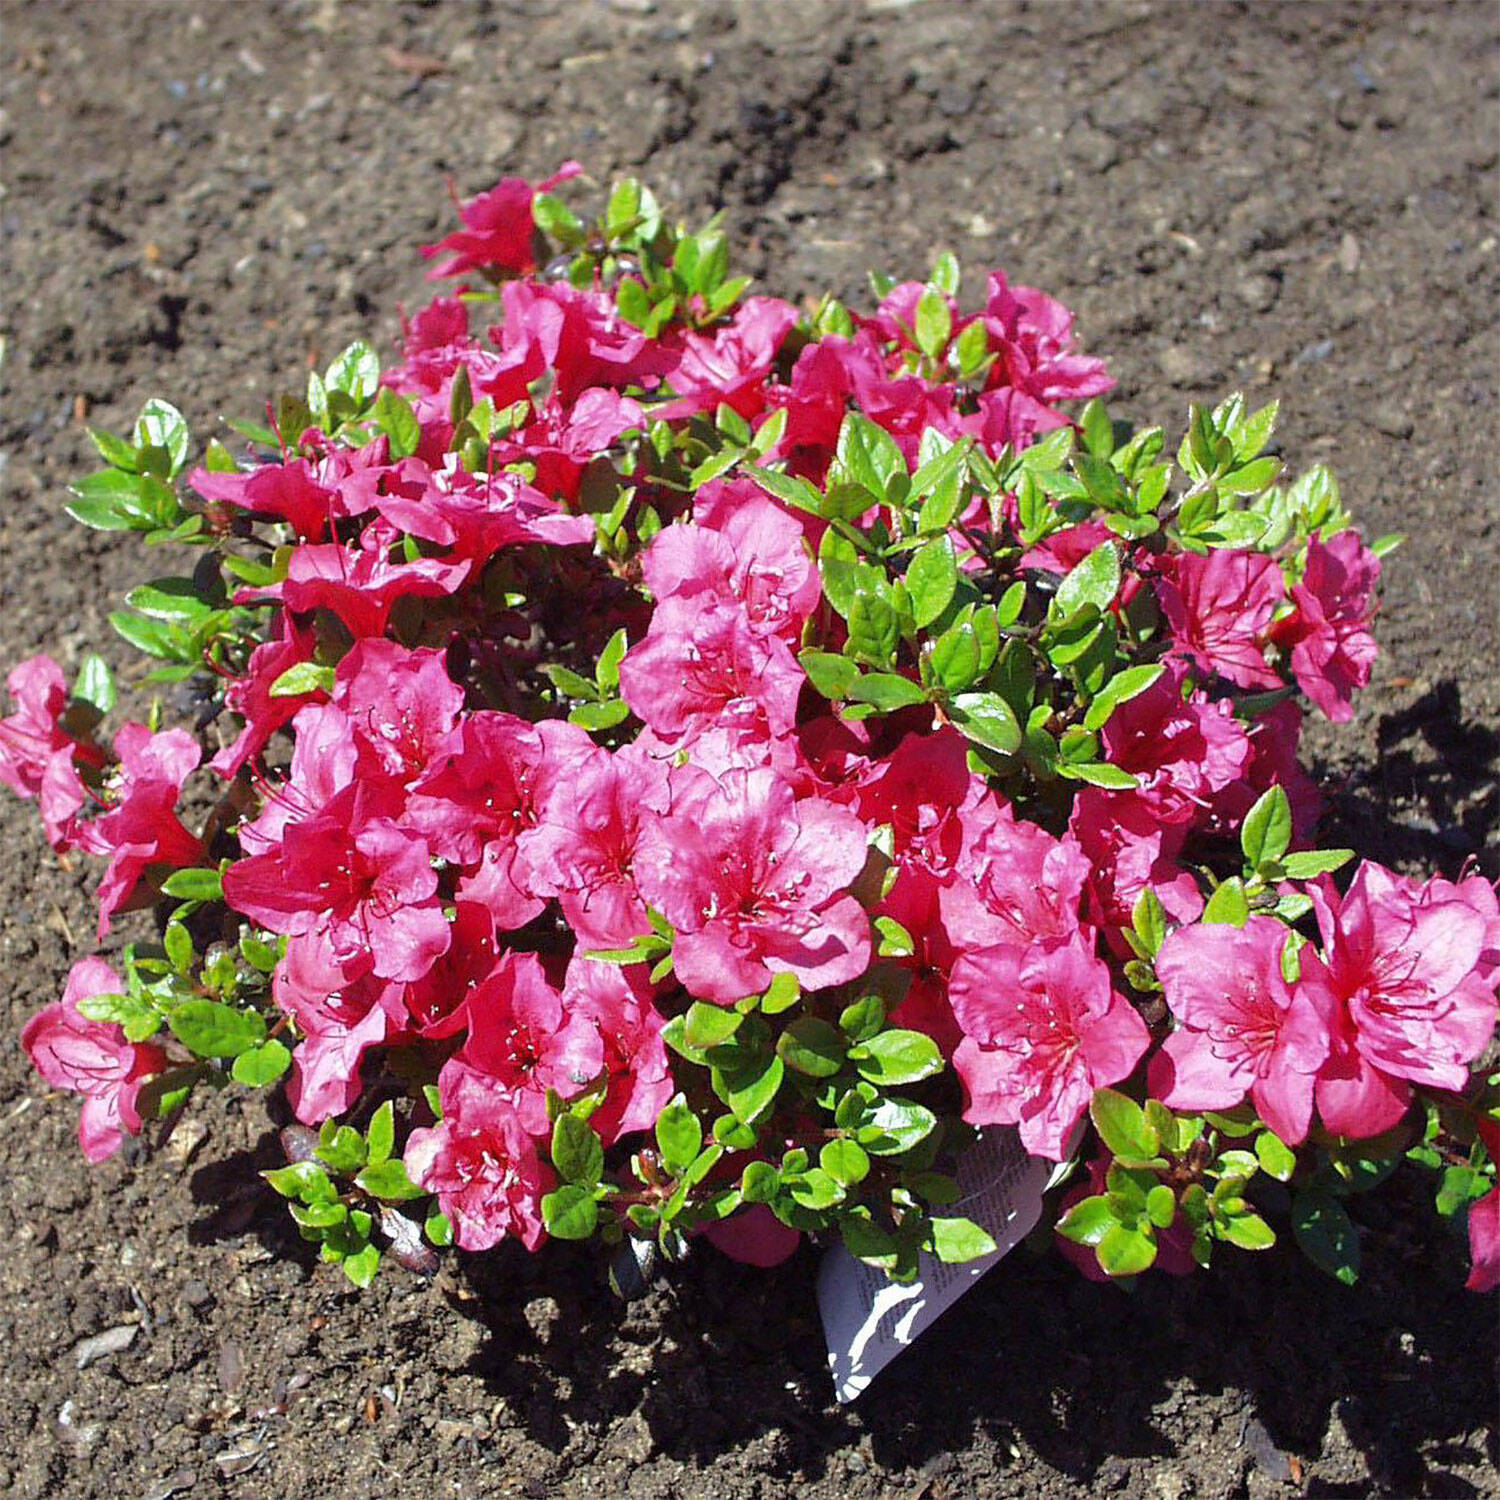 Kategorie <b>Hecken </b> - Rhododendron 'Purpurkissen'® - Rhododendron obtusum 'Purpurkissen'®